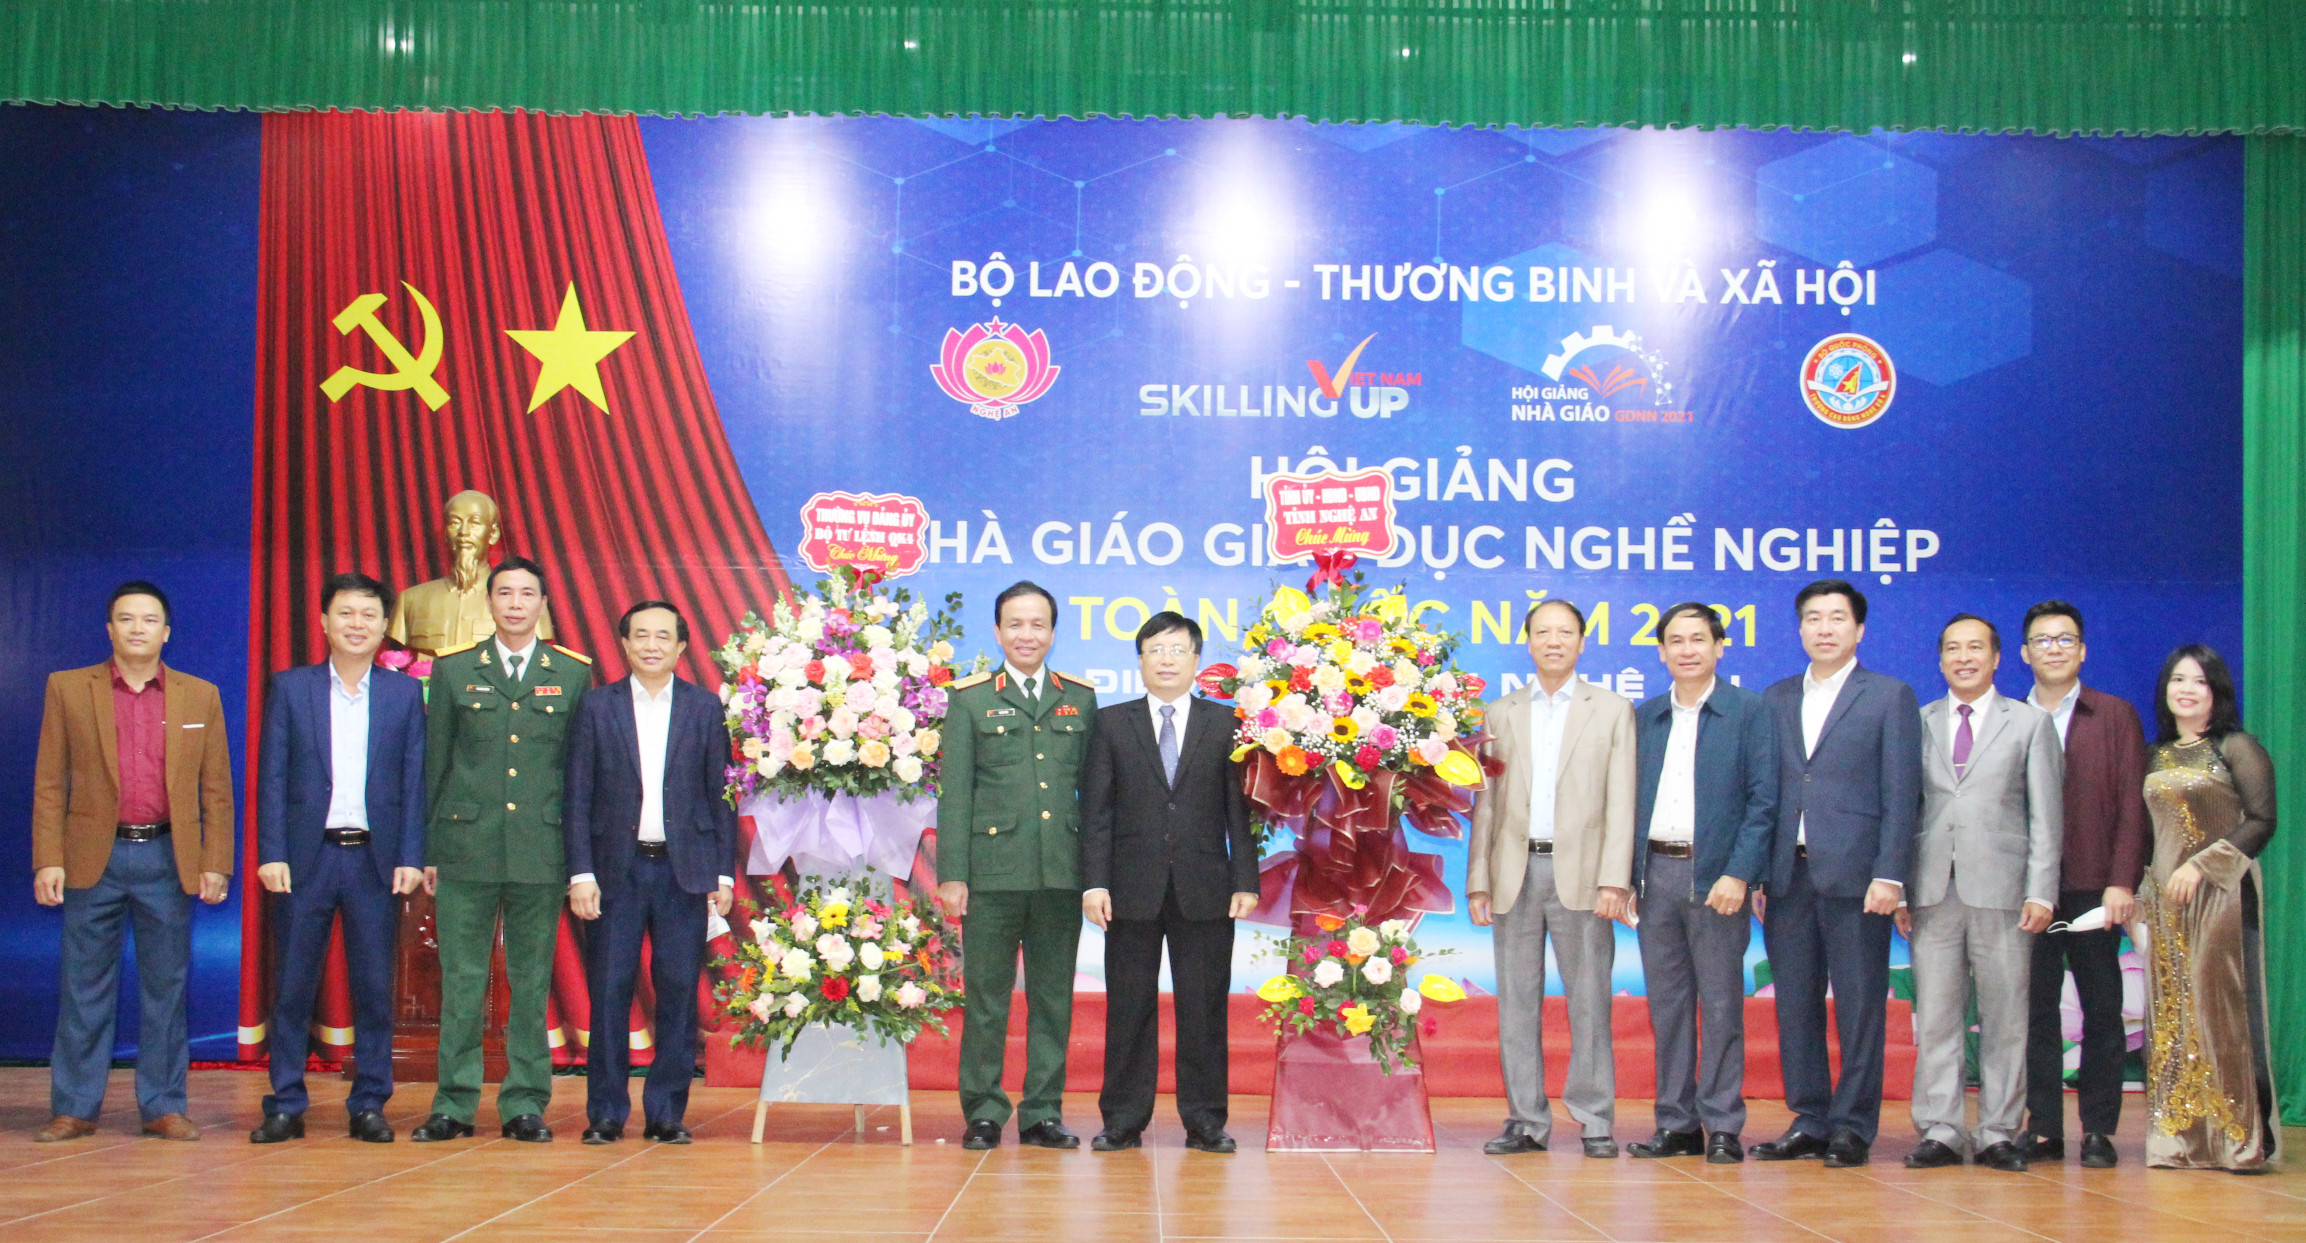 Đại diện lãnh đạo Quân khu 4 và lãnh đạo tặng hoa chúc mừng các nhà giáo nhân ngày Nhà giáo Việt Nam 20/11. Ảnh: Thanh Nga